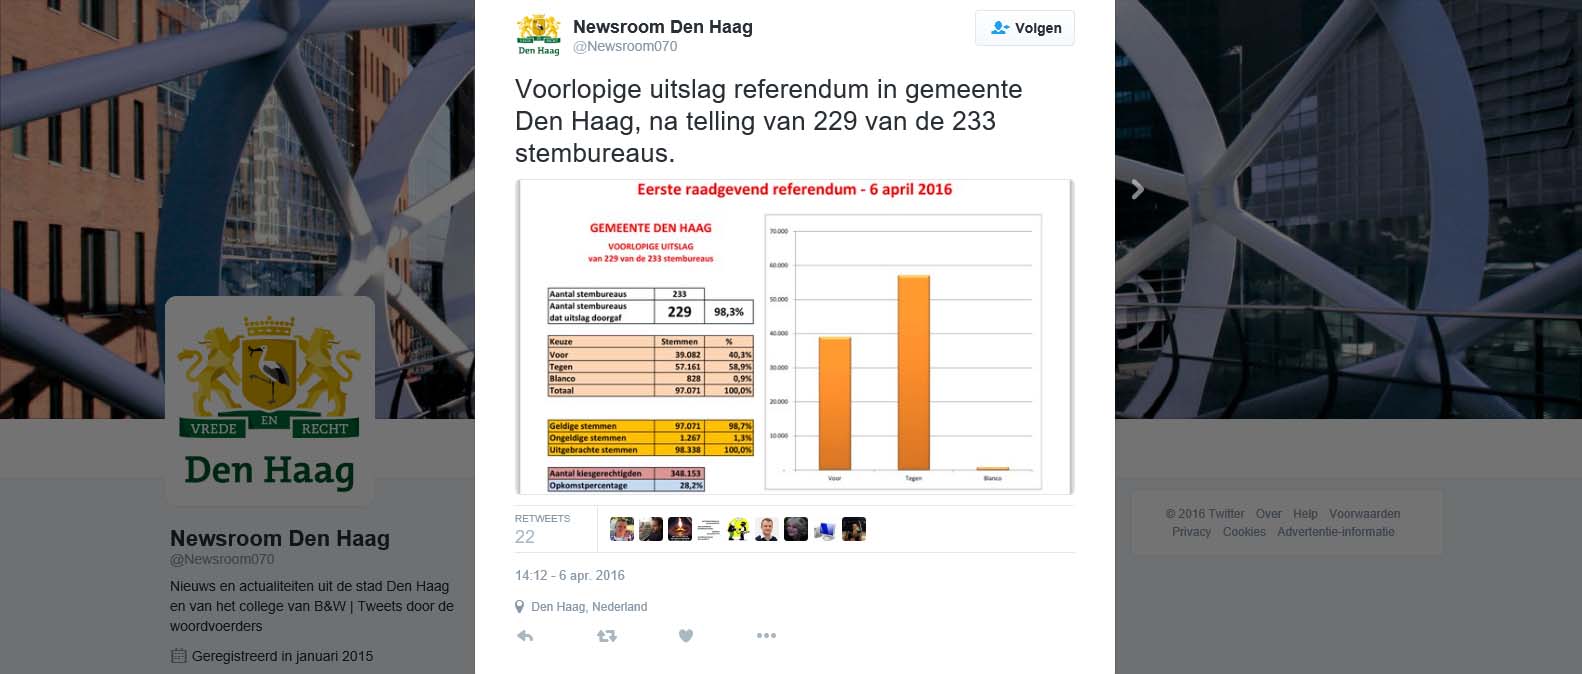 Den Haag referendum van 229 van de 233 stembureaus